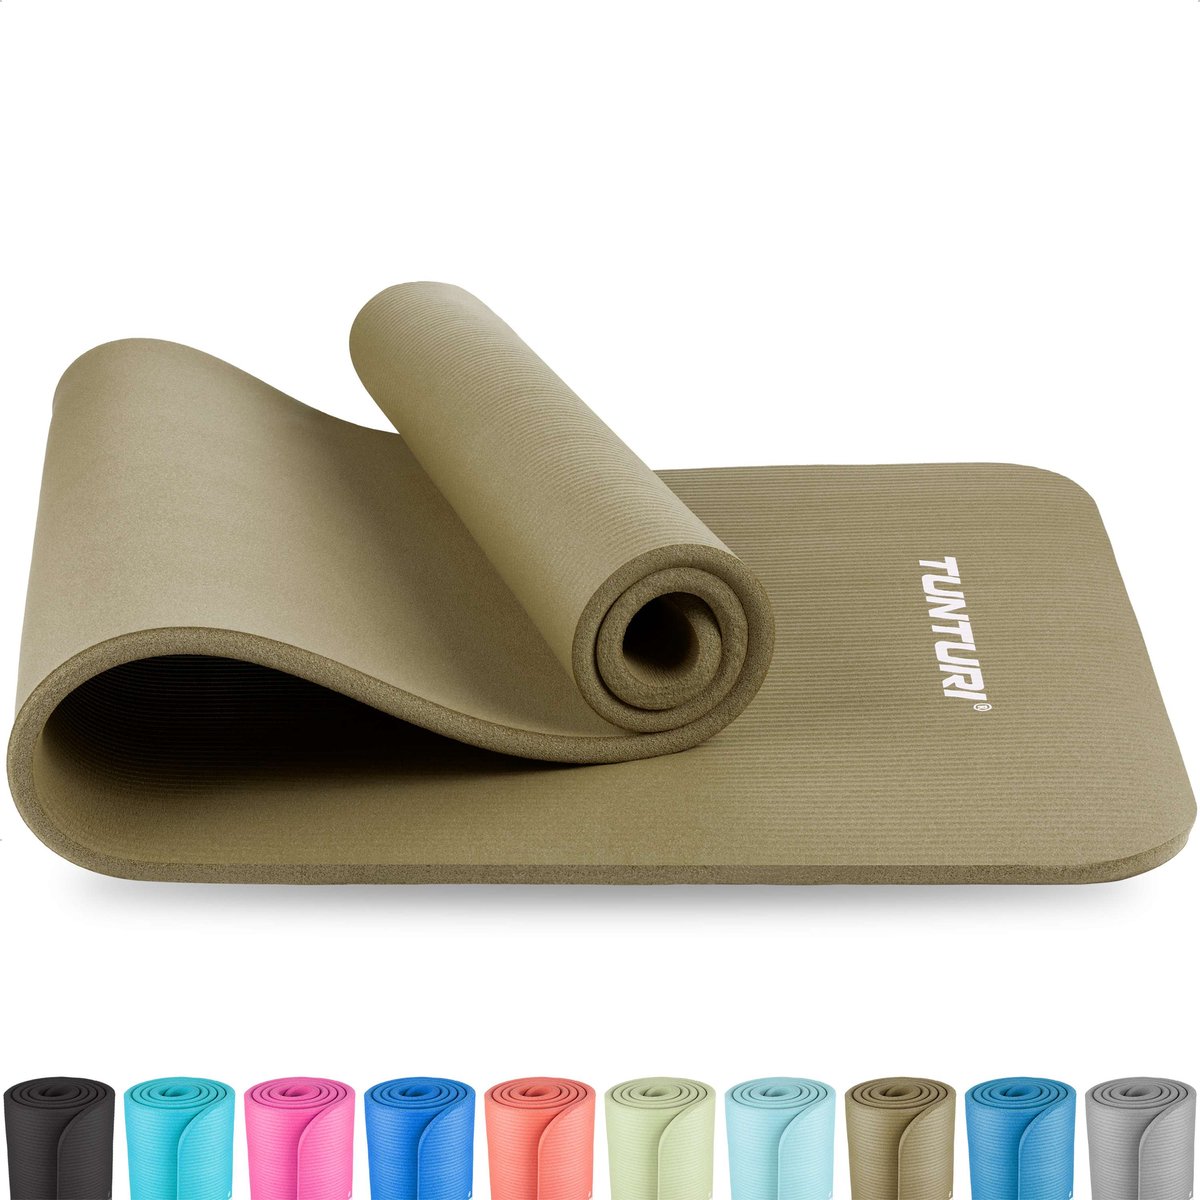 Tapis yoga antidérapant - épaisseur 3 plis confort